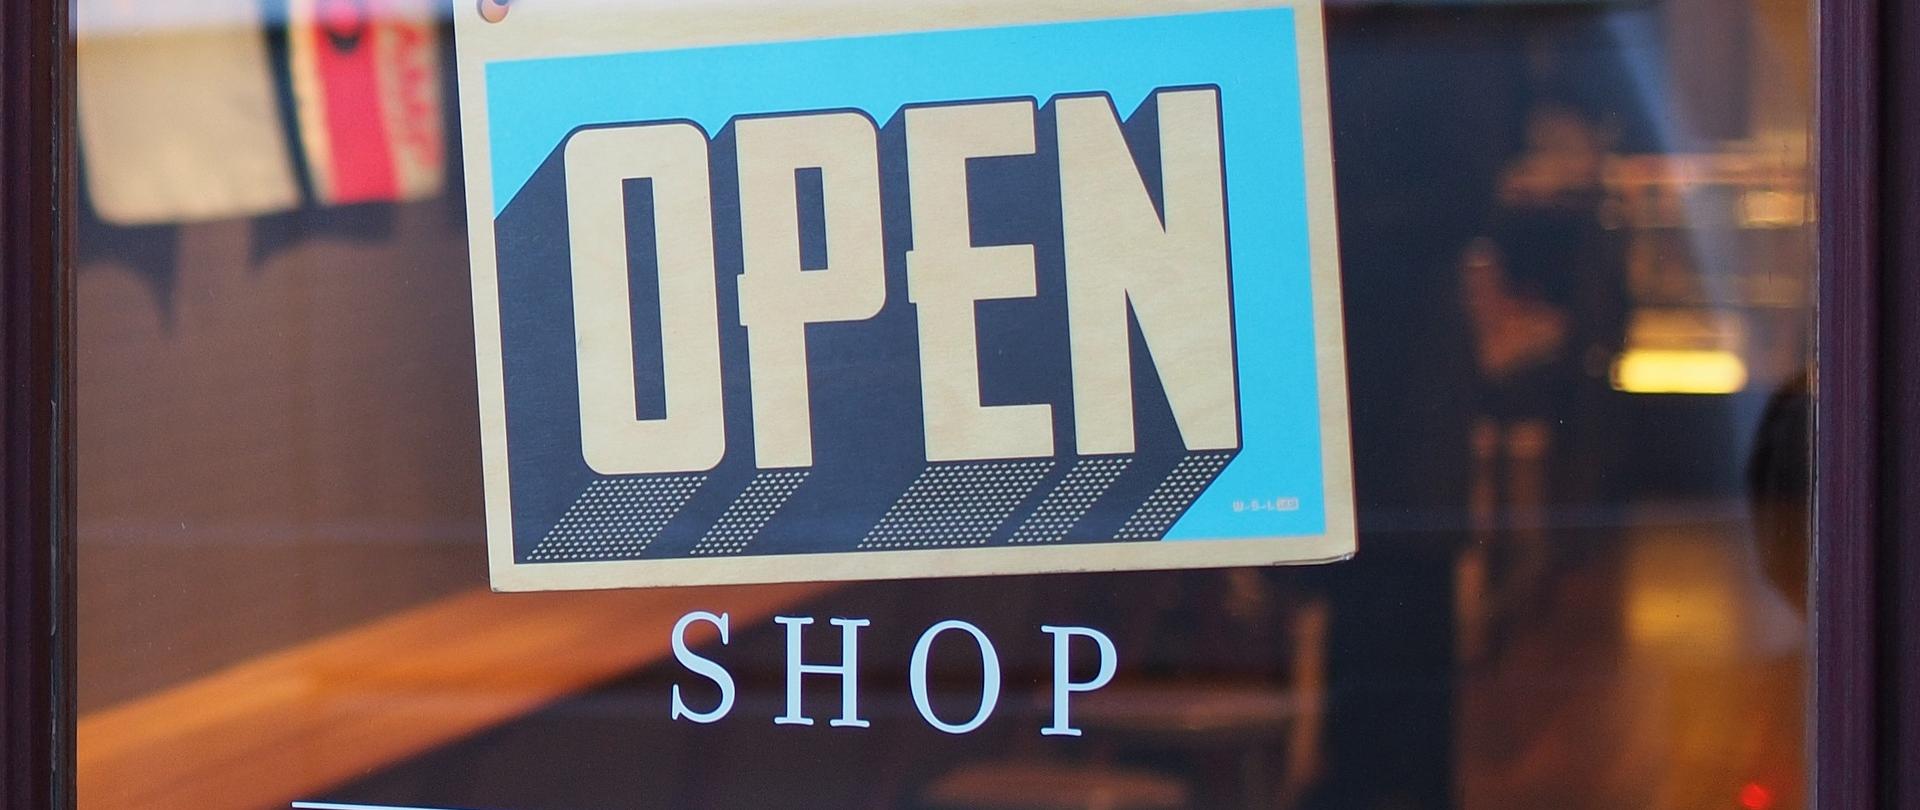 napis na drzwiach wejściowych do sklepu "Open shop" to znaczy "Sklep otwarty"